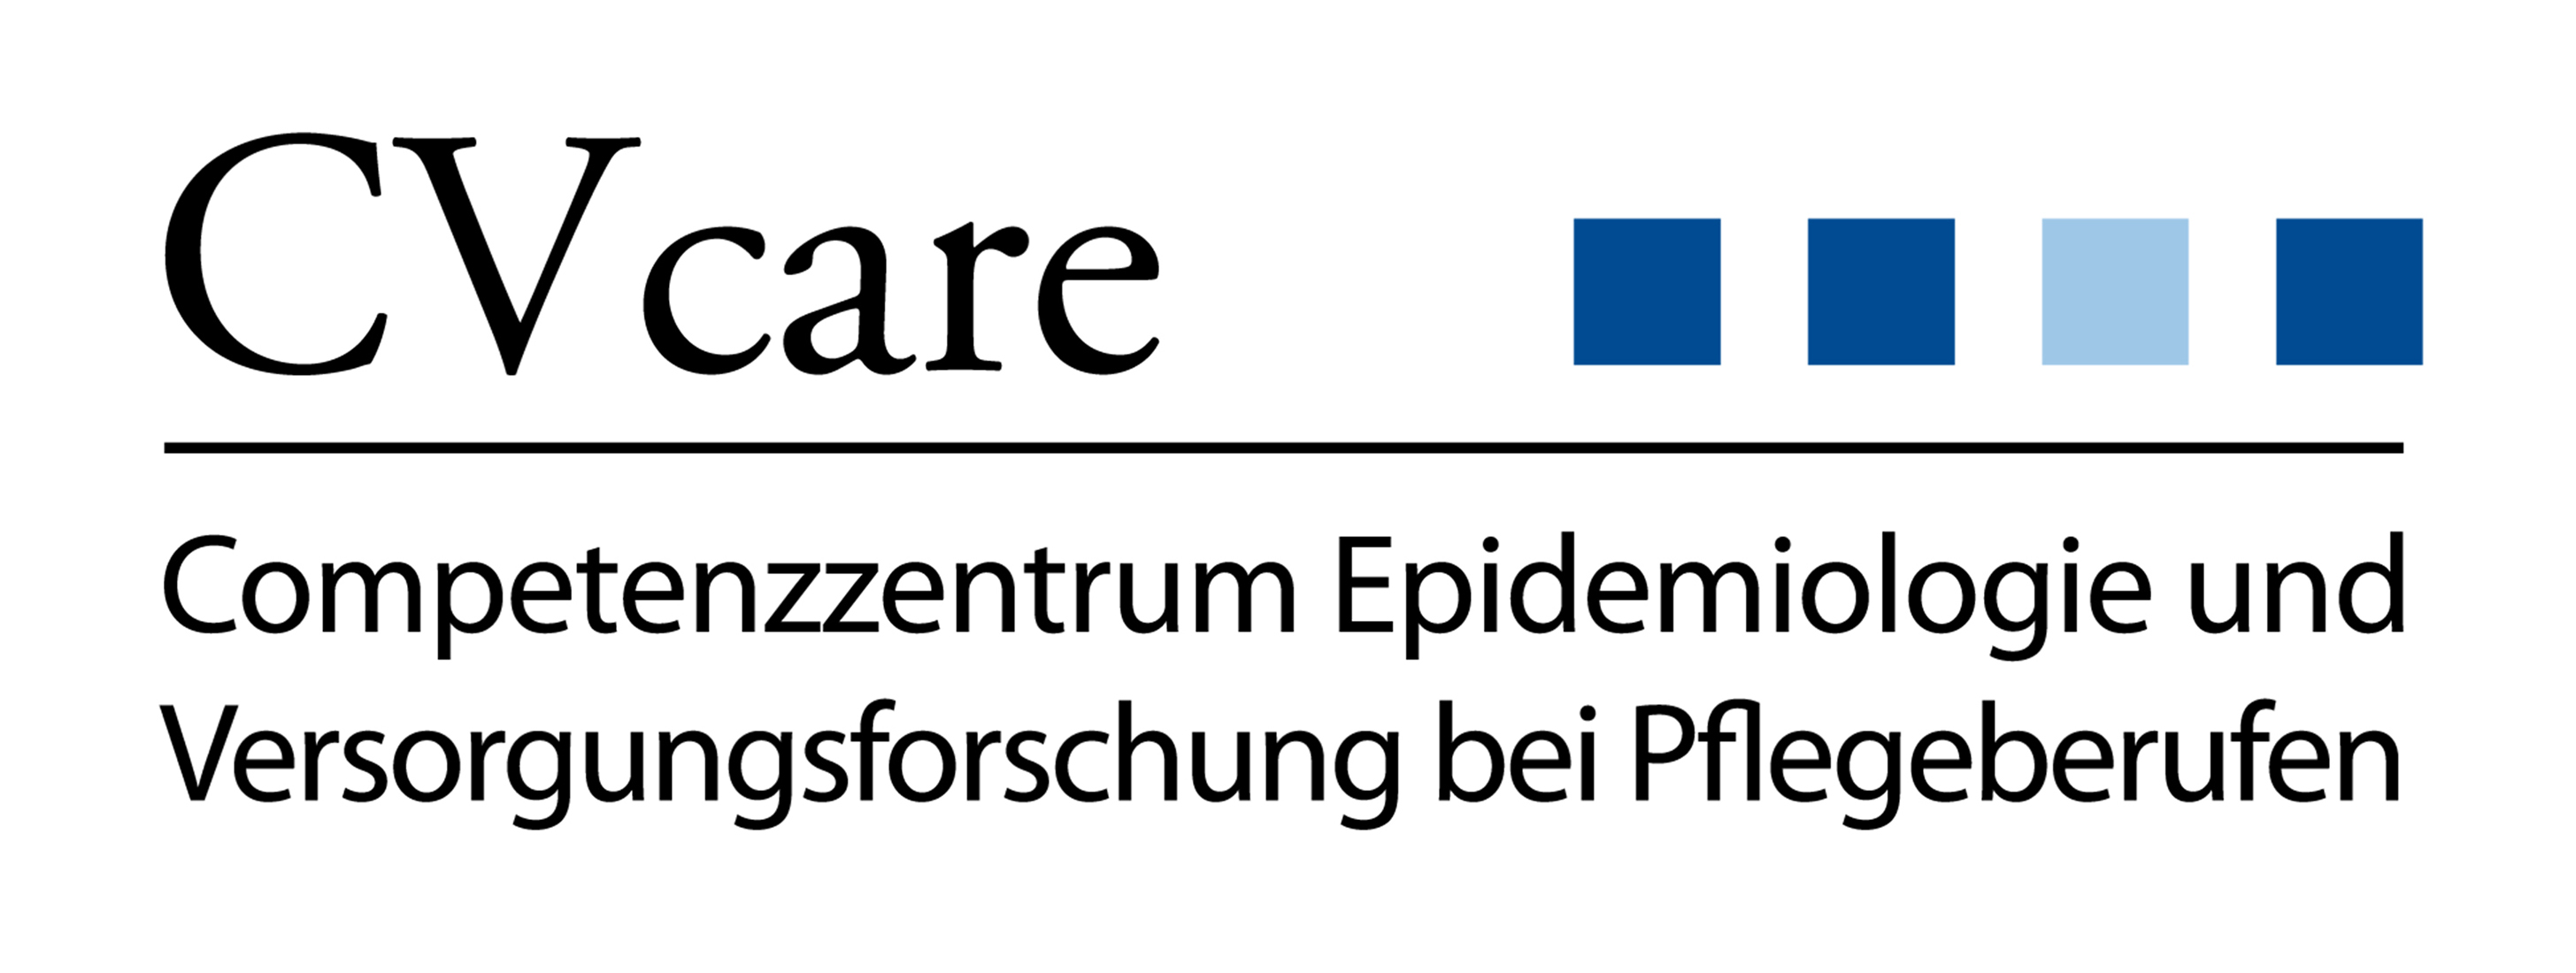 Logo: CVcare-Competenzzentrum Epidemiologie und Versorgungsforschung bei Pflegeberufen